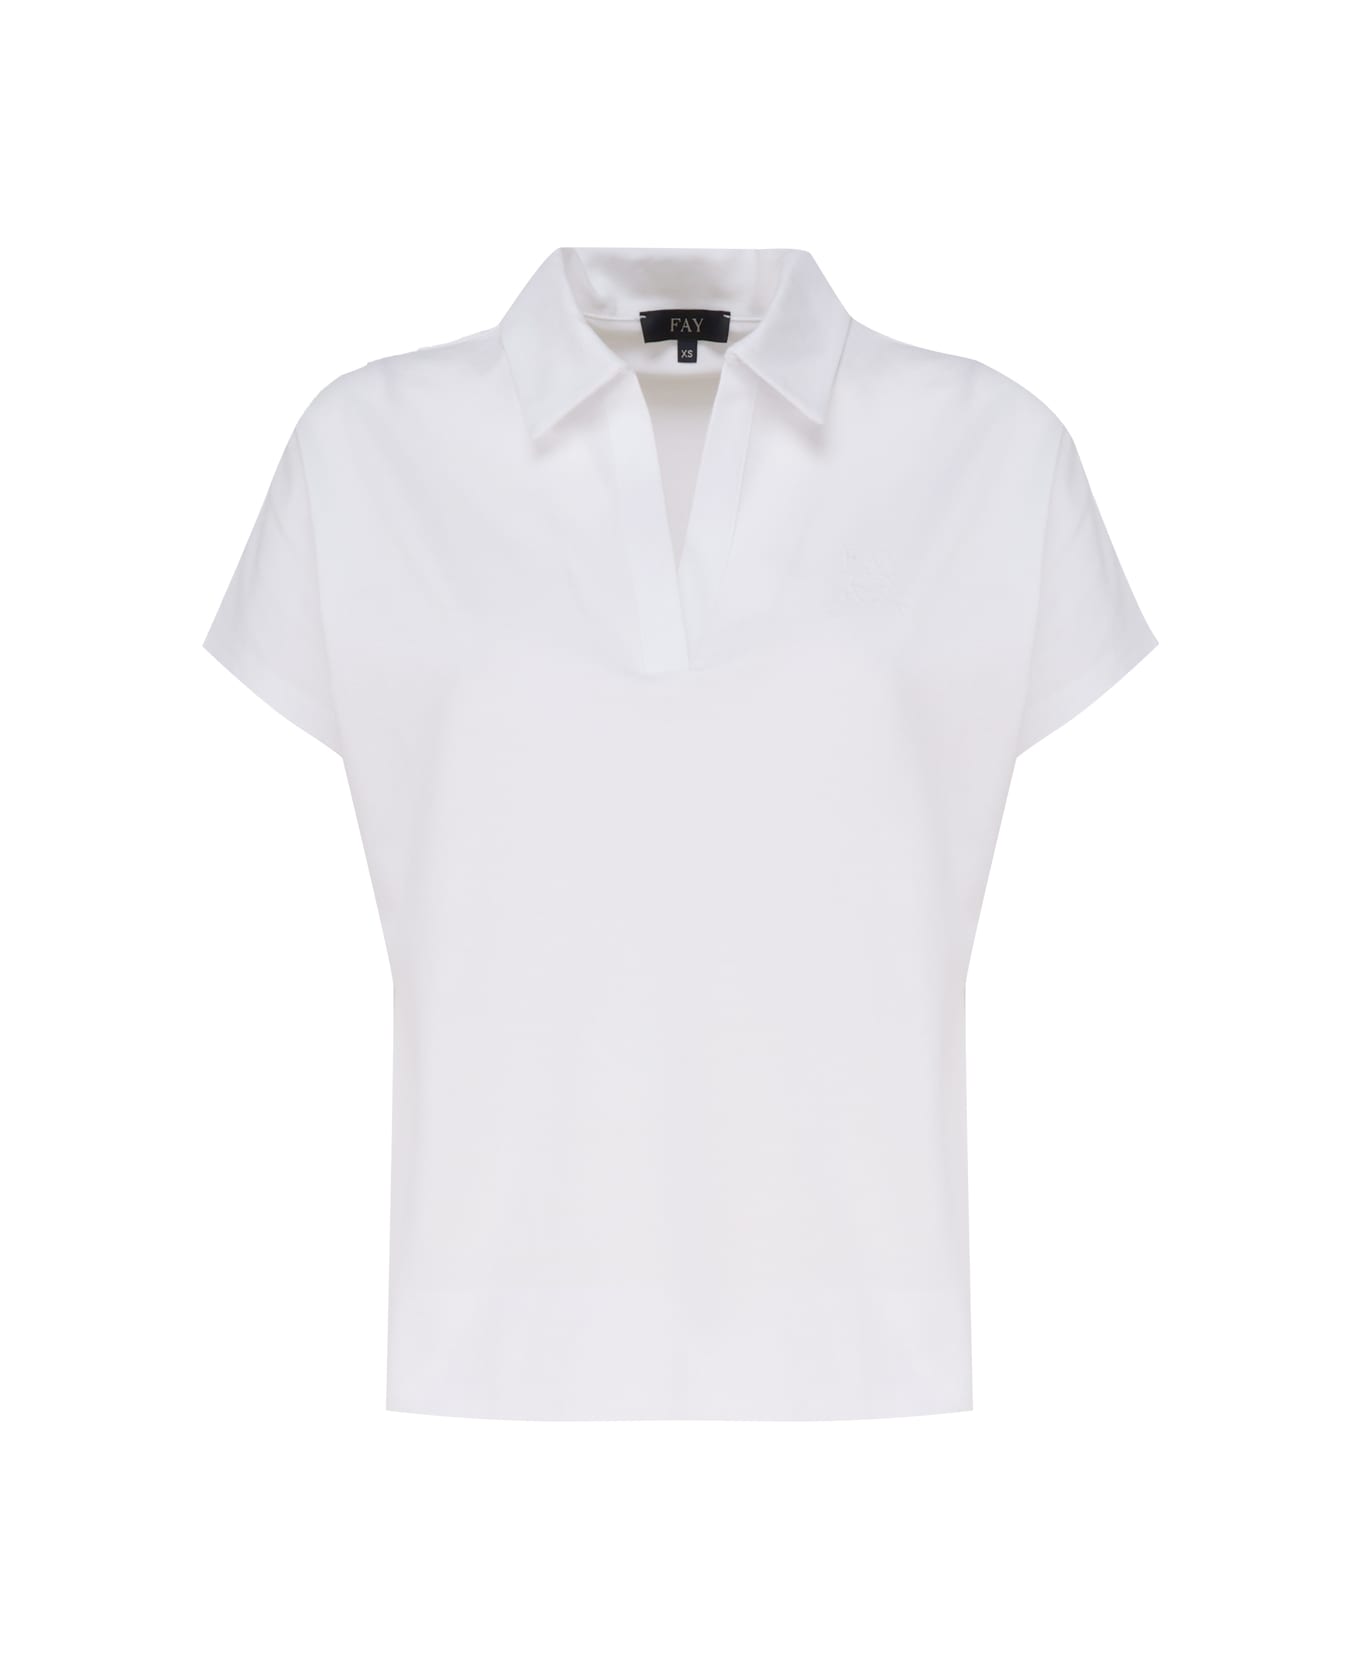 Fay Short Sleeve Polo Shirt